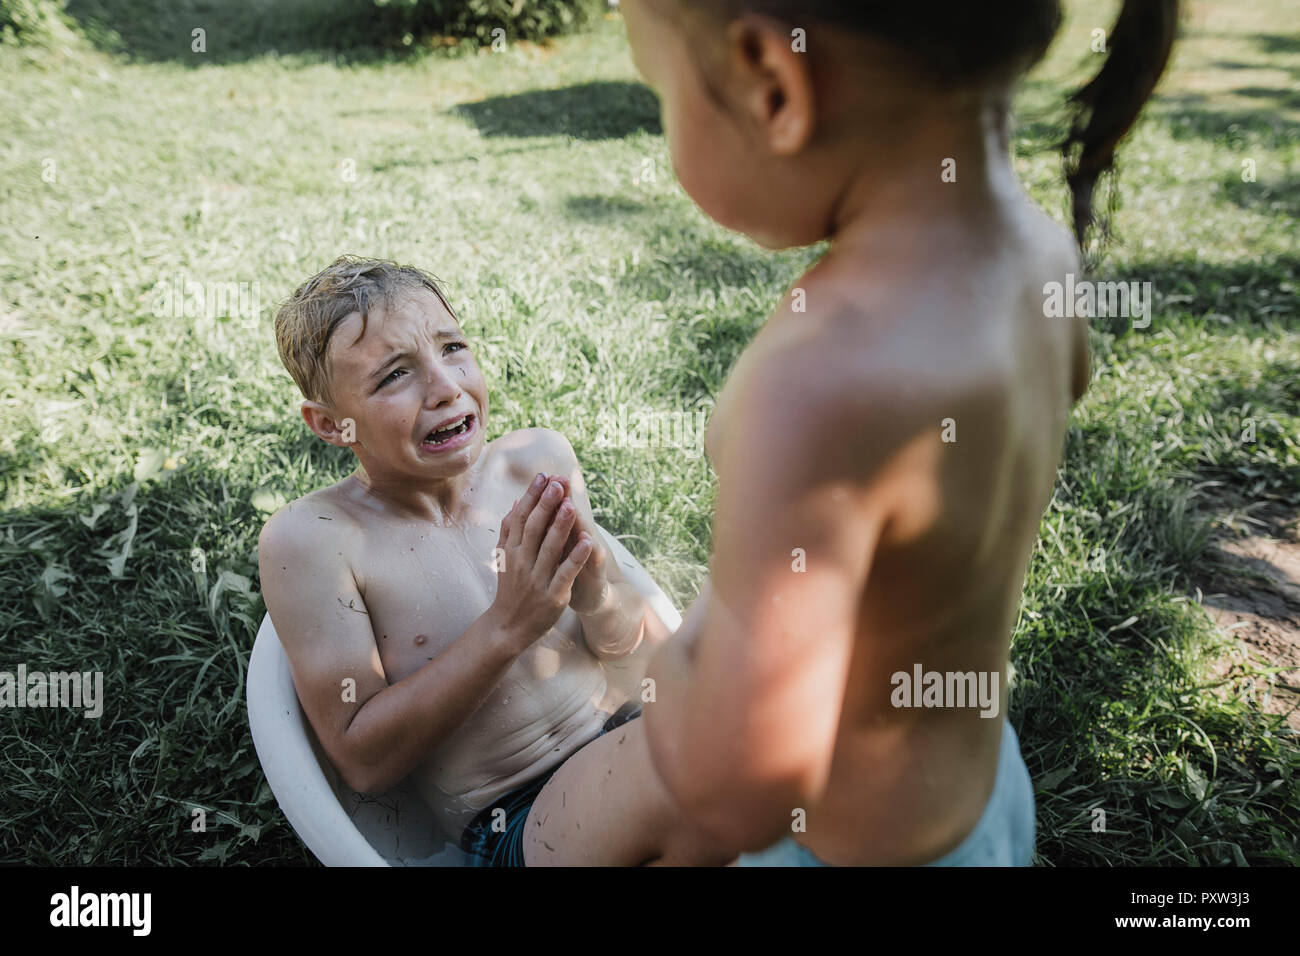 Fratello e Sorella gioca con acqua nella piccola vasca da bagno in giardino Foto Stock